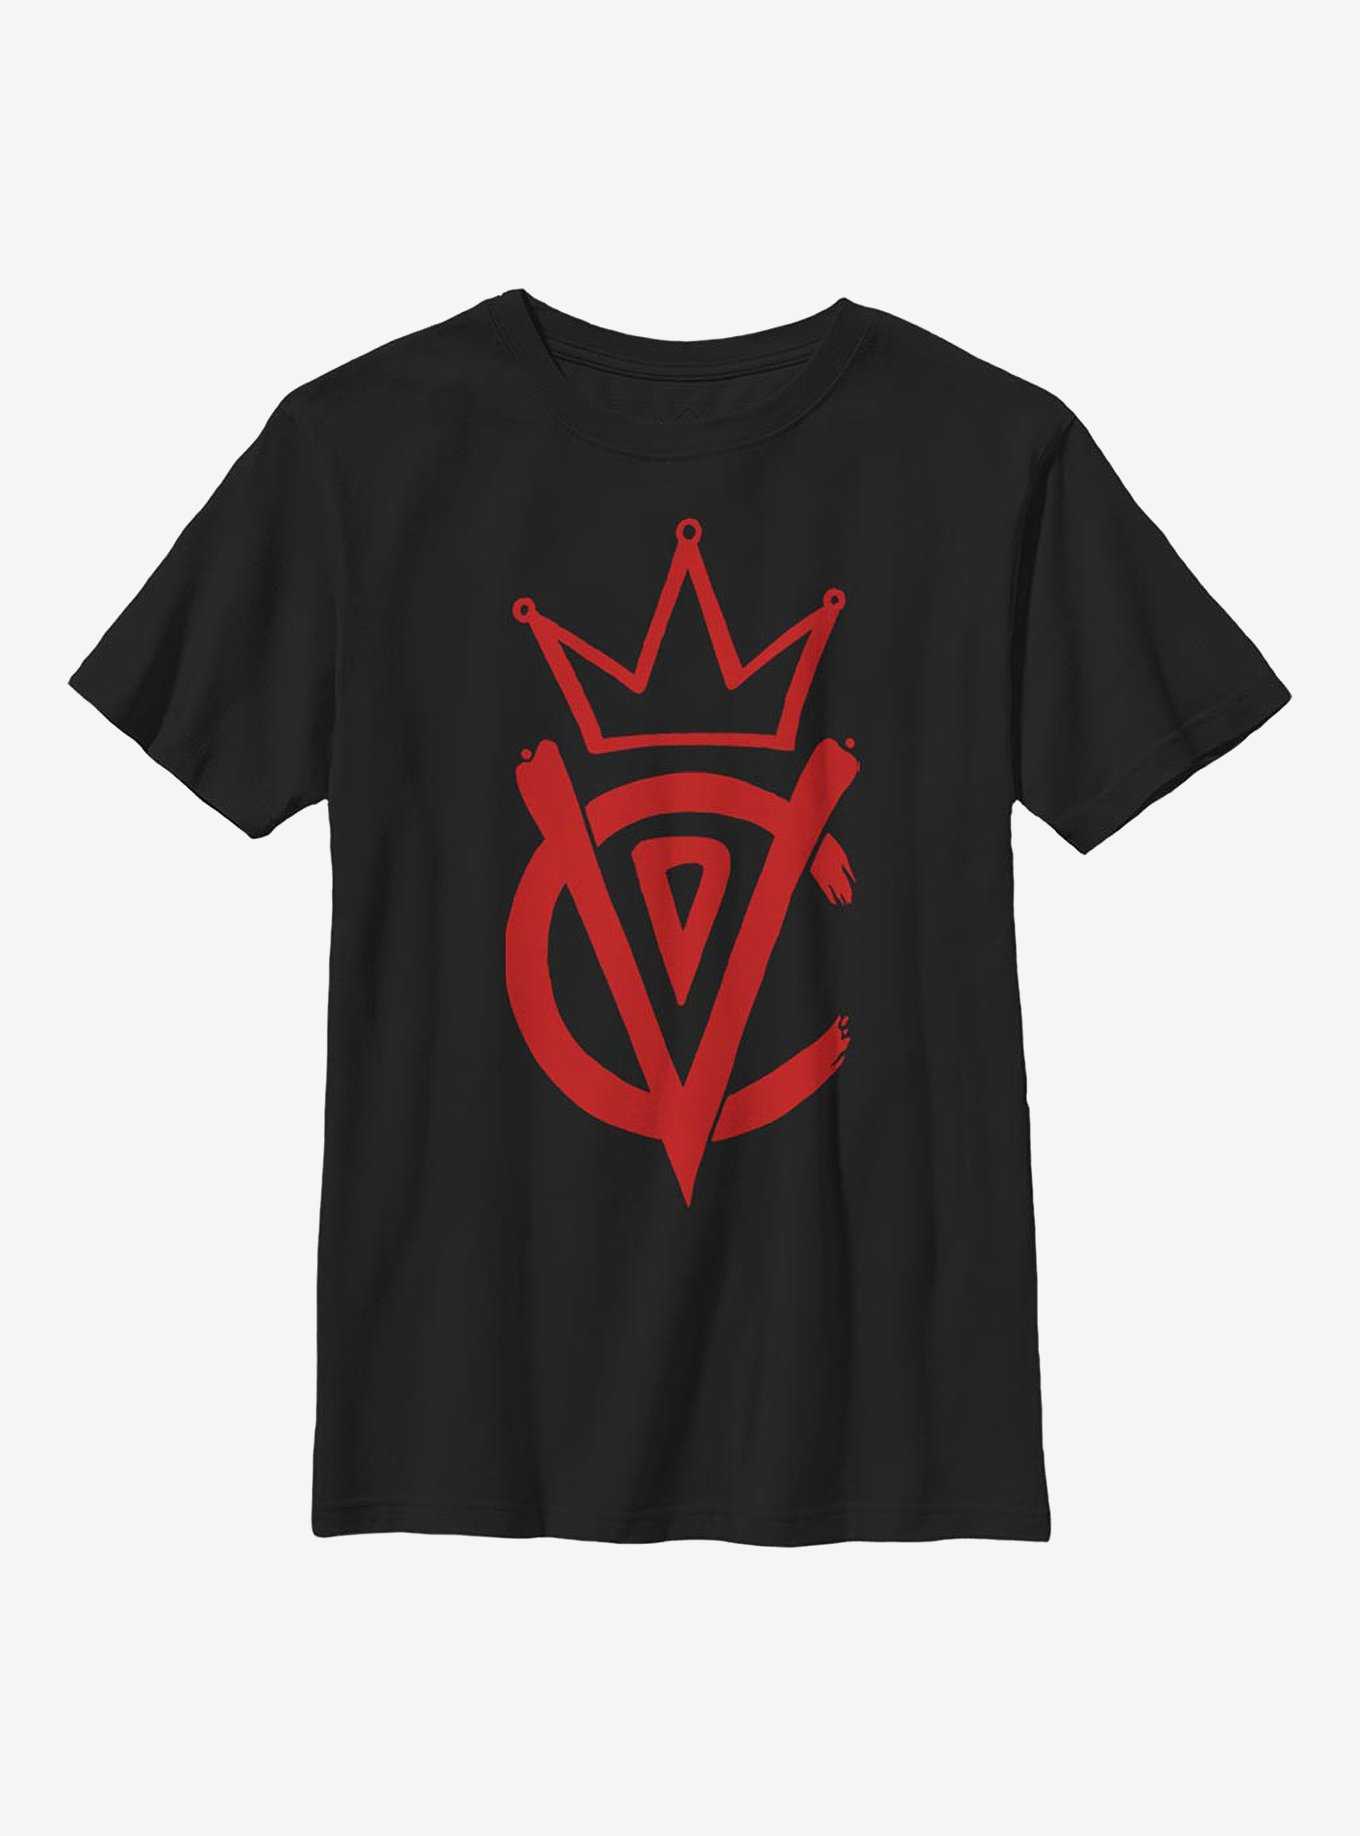 Disney Cruella Emblem Youth T-Shirt, , hi-res